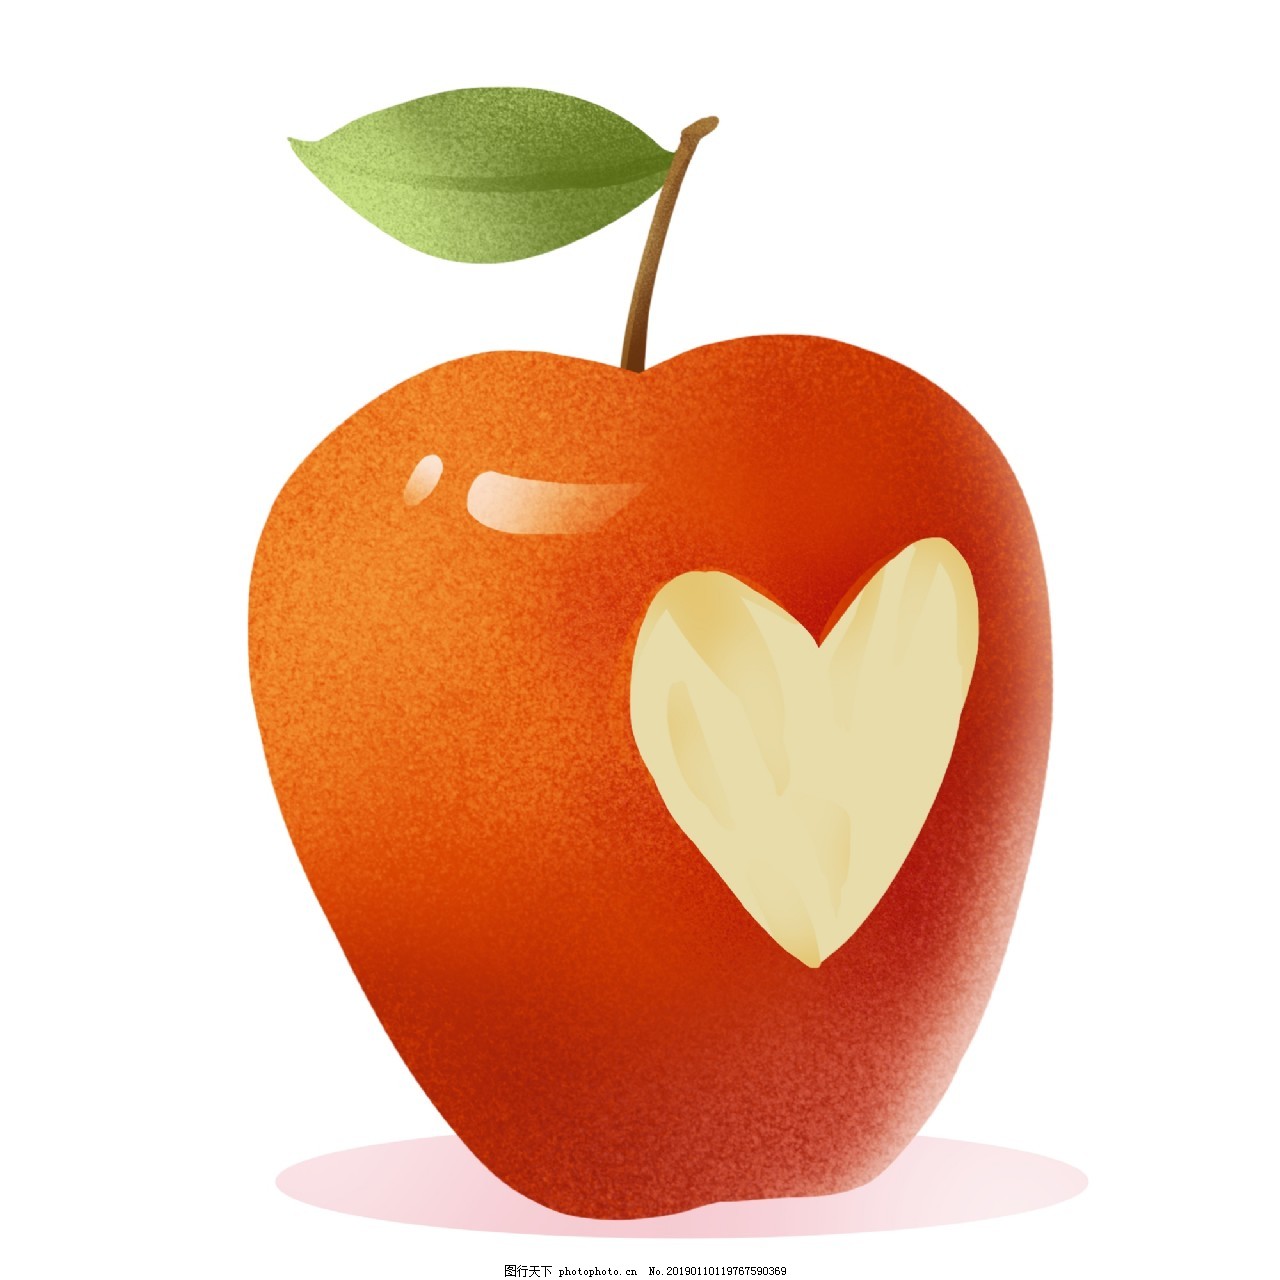 心形水果定型生长模具心形苹果模具LOVE爱心模具心形甜瓜人参果模-阿里巴巴